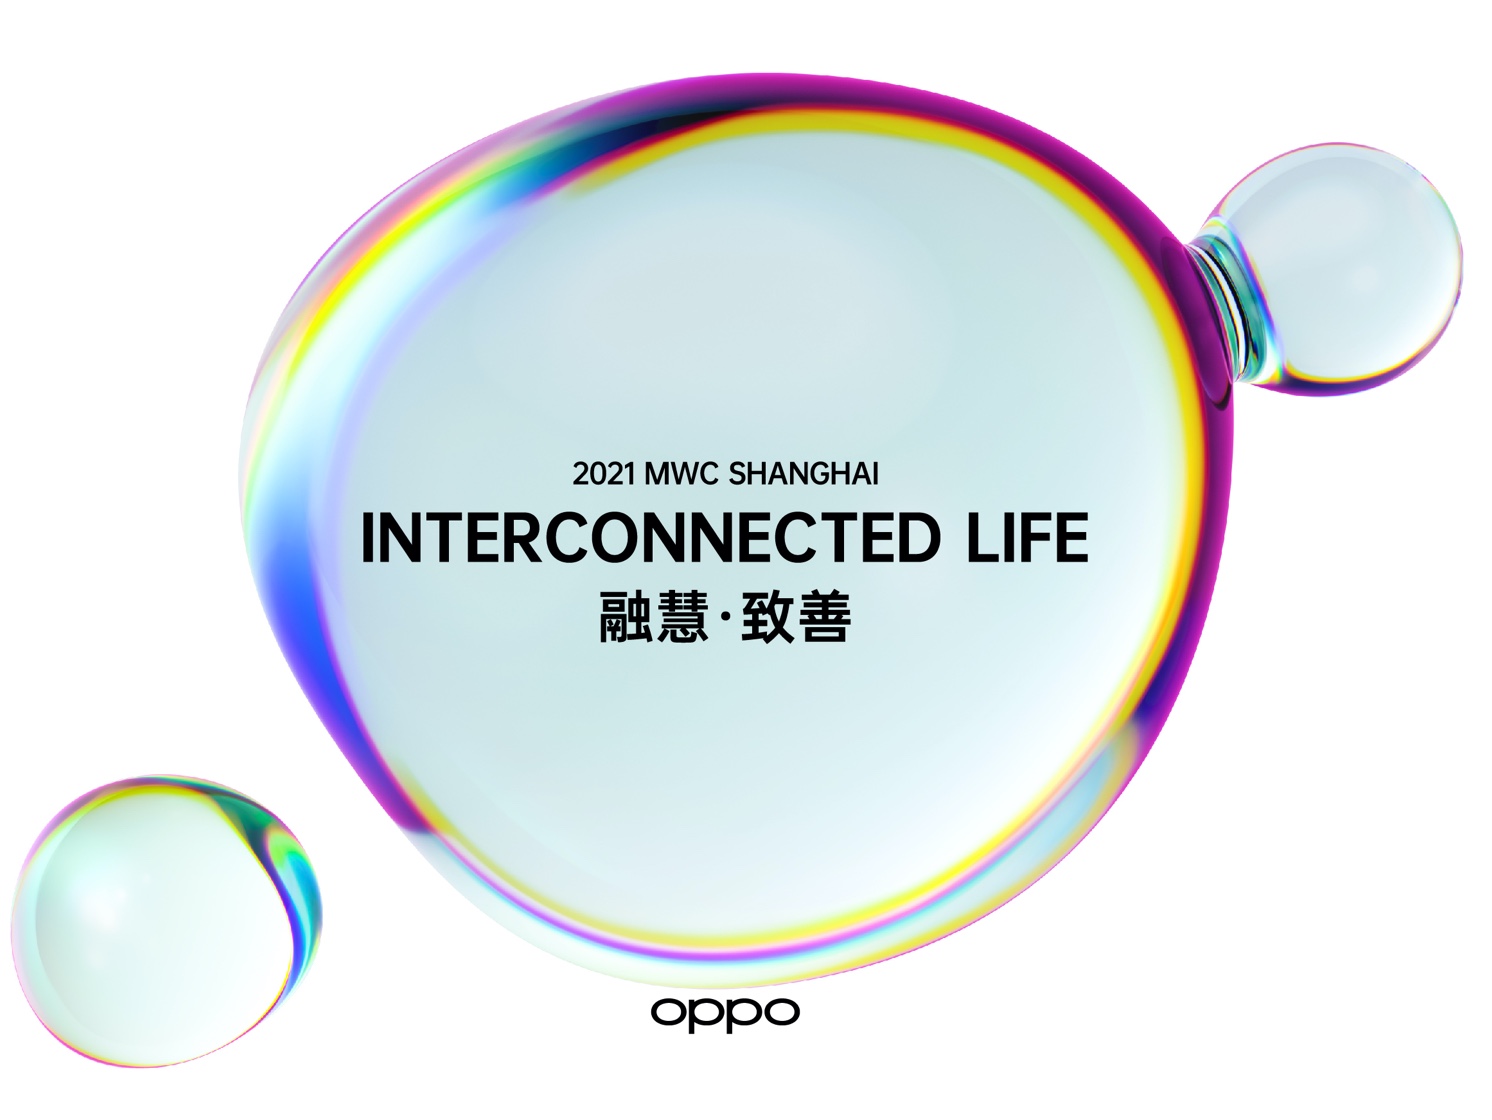 OPPO presenteert nieuwe technologische doorbraken tijdens Mobile World Congress Shanghai 2021